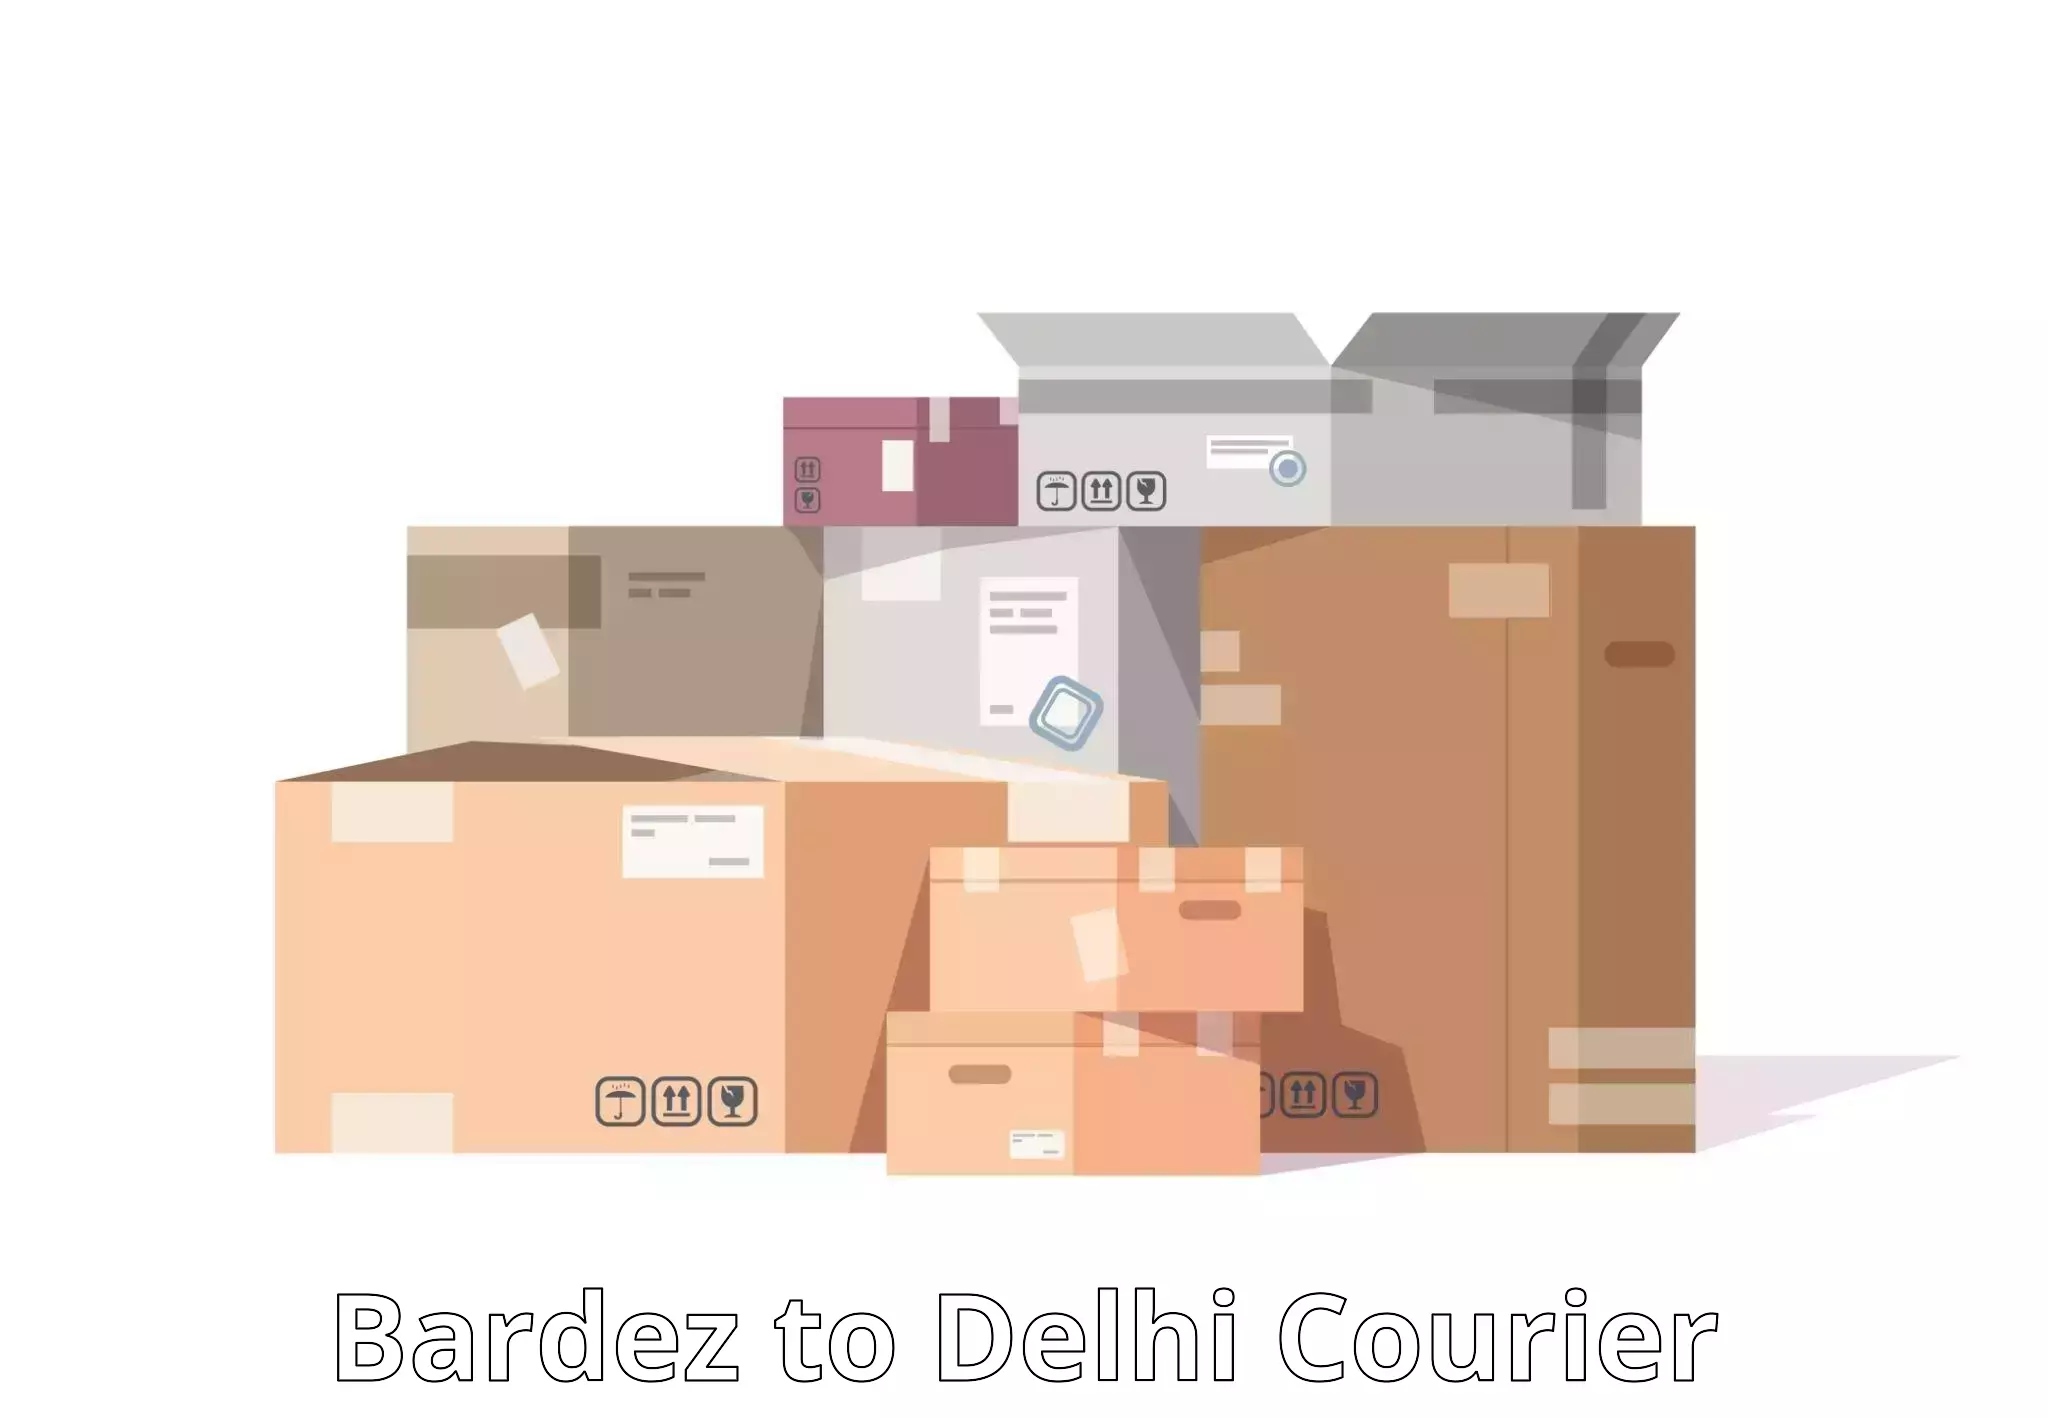 Next-day delivery options Bardez to Jawaharlal Nehru University New Delhi